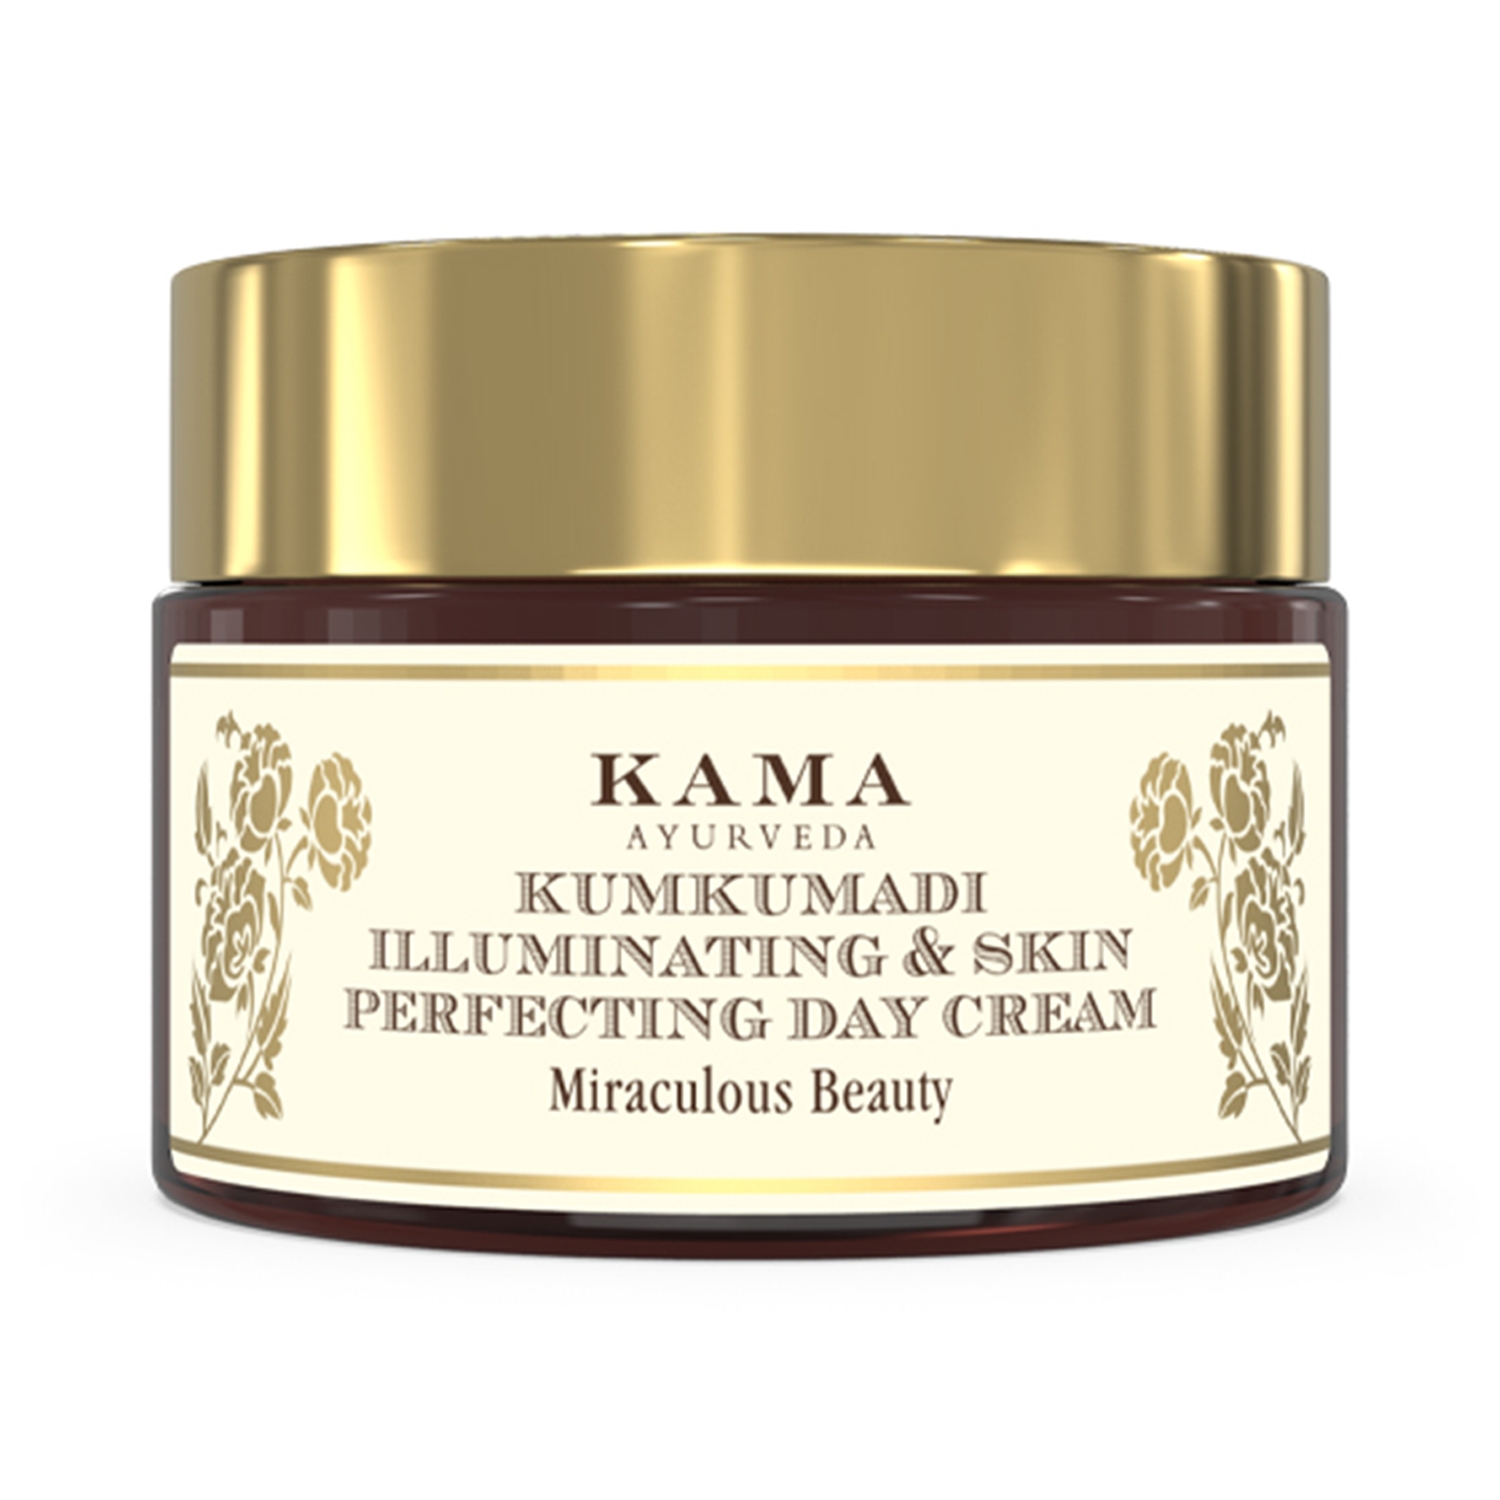 Kama Ayurveda Kumkumadi Illuminating & Skin Perfecting Day Cream (8g)